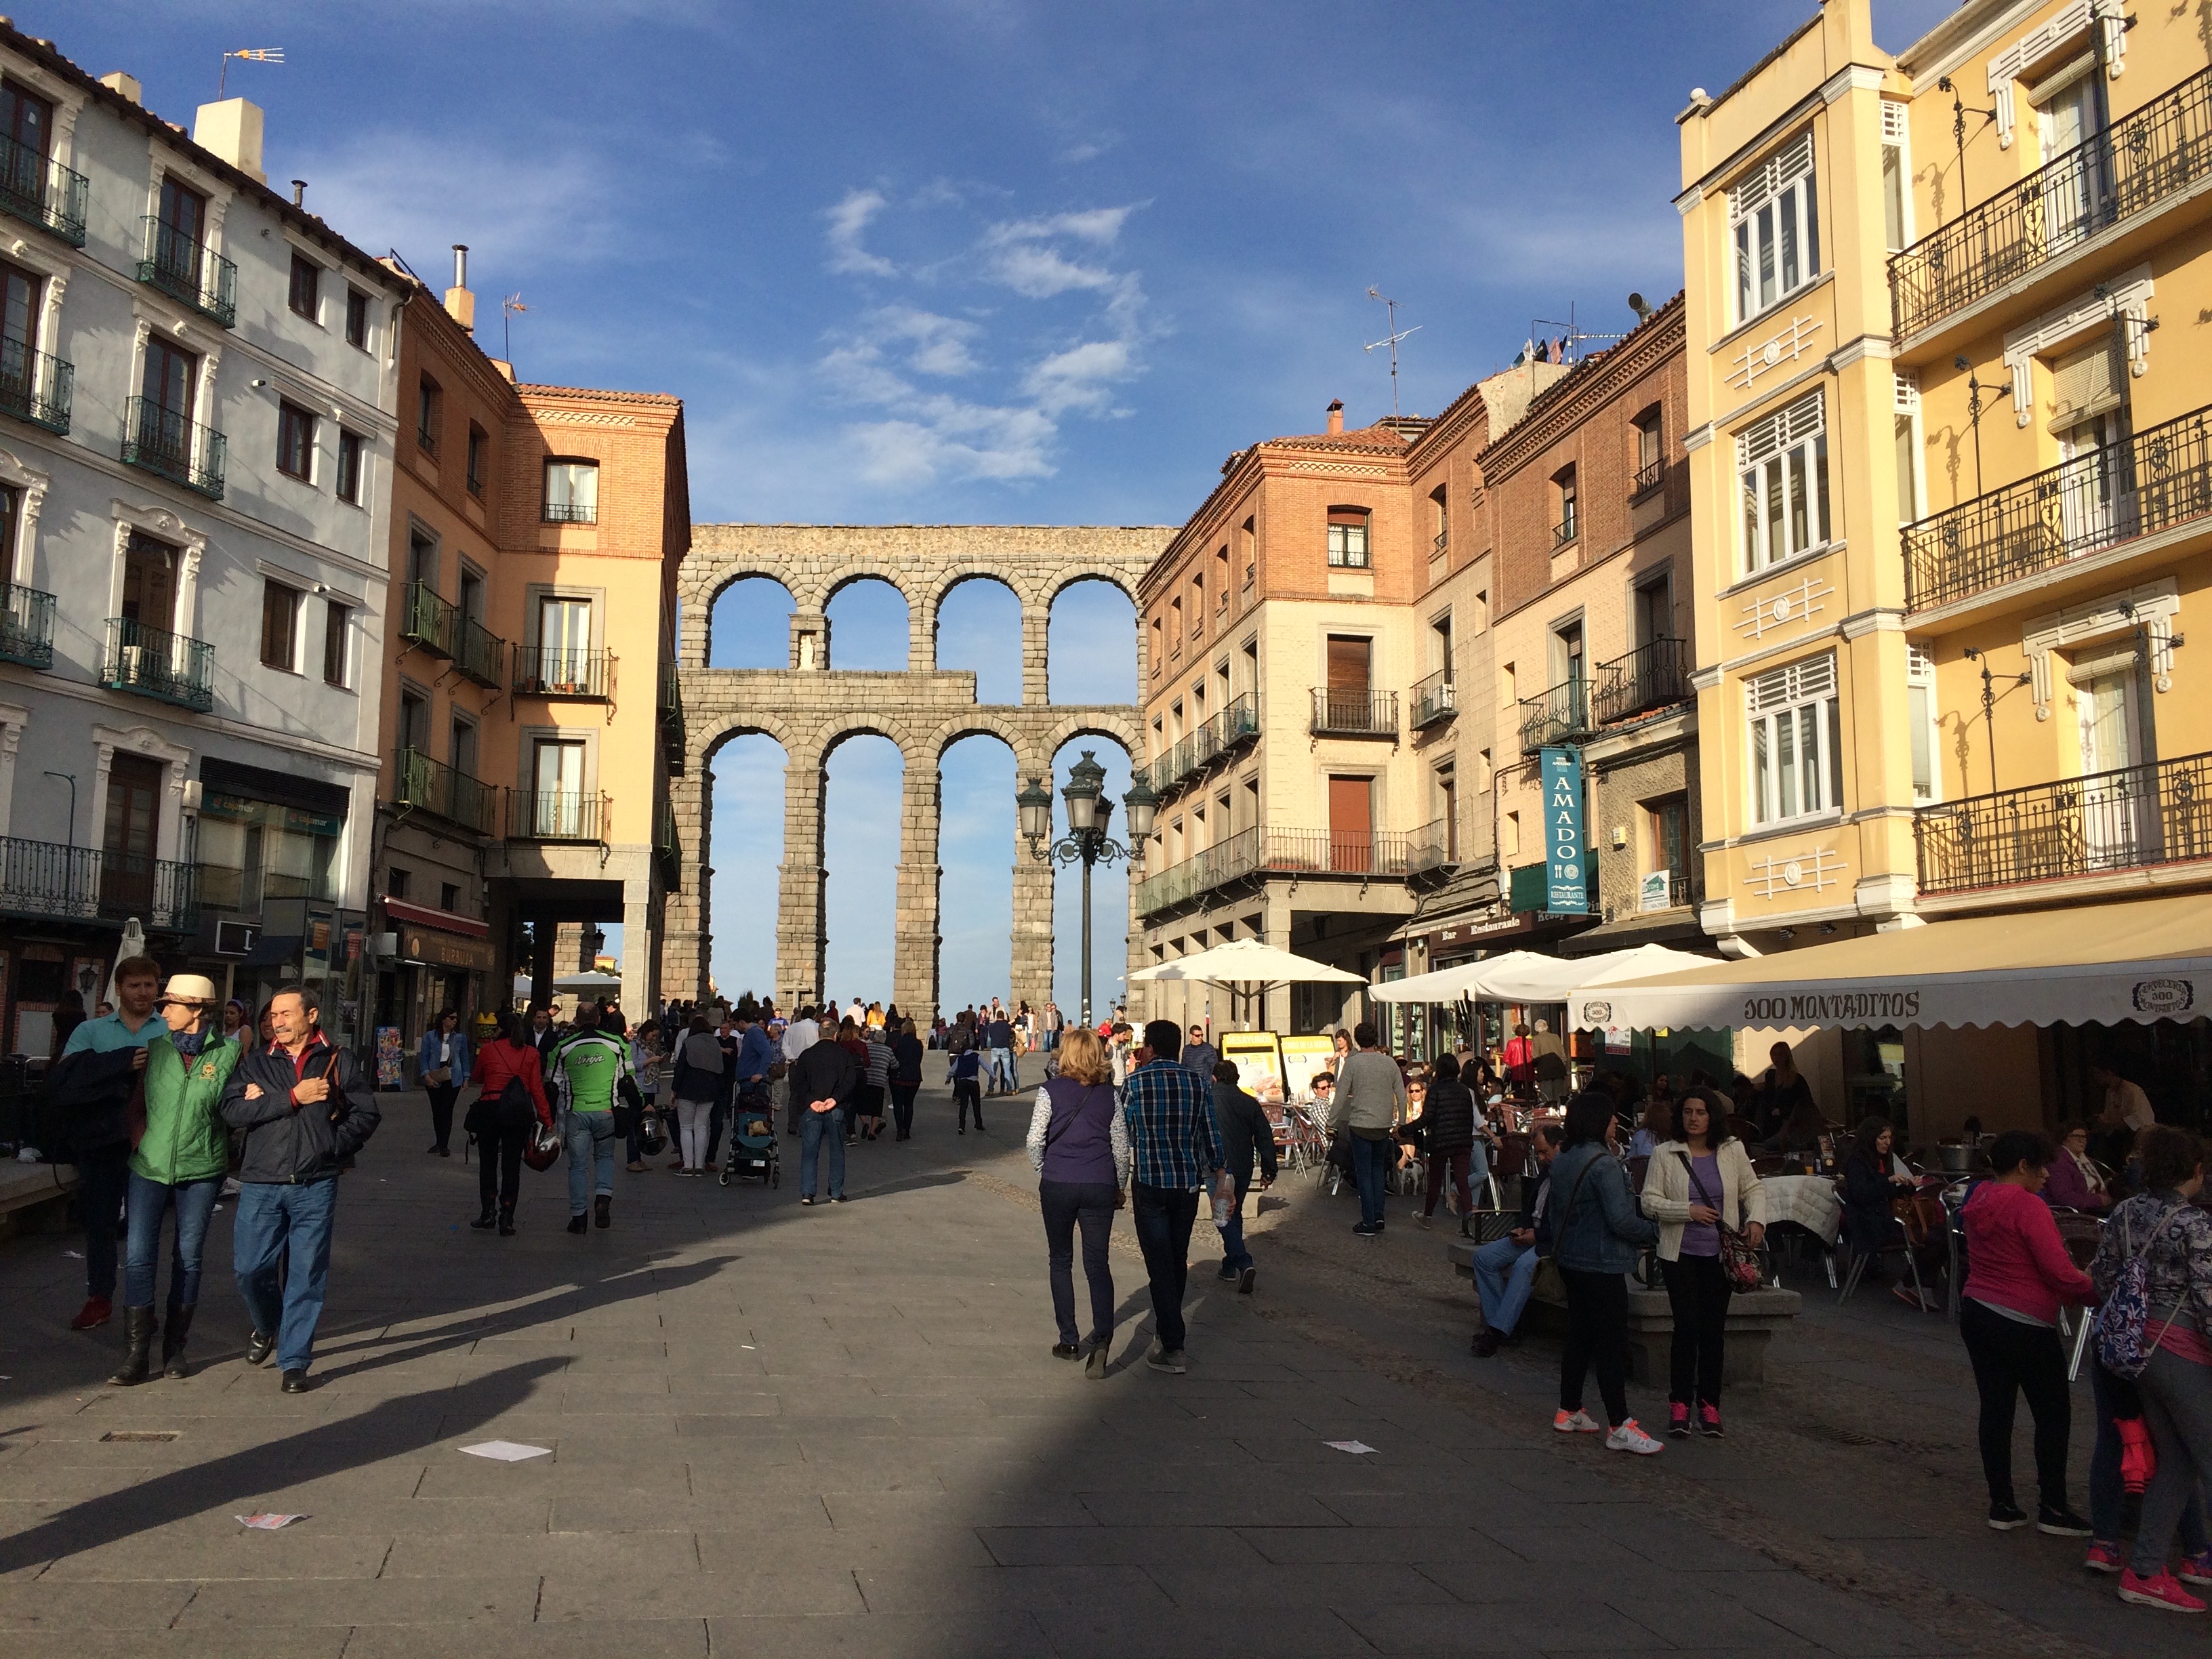 Segovia aqueduct centre of town